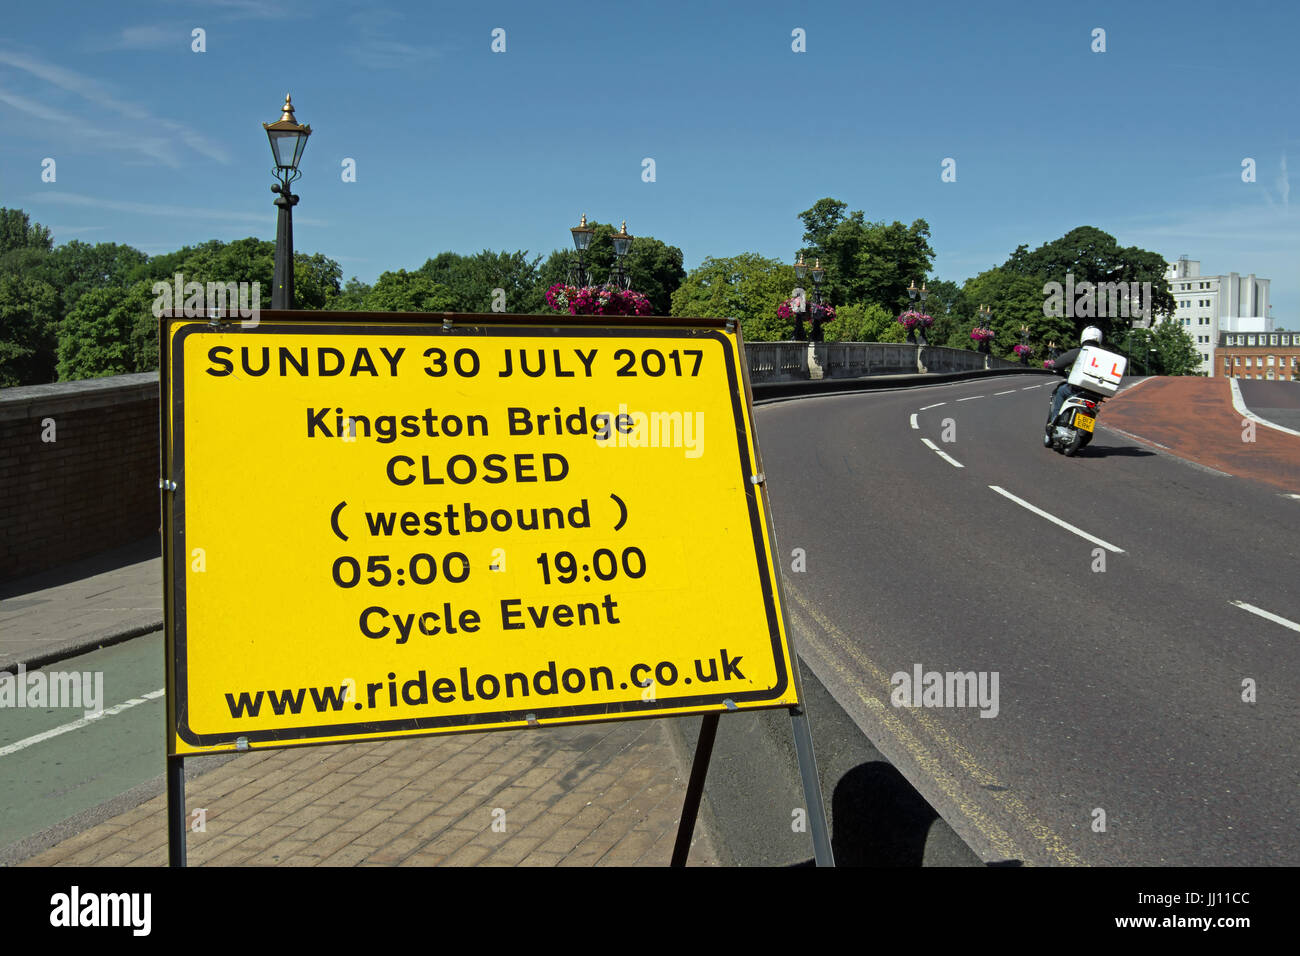 Melden Sie auf Annäherung an Kingston Bridge, Kingston, Surrey, England, unter Mitteilung der Brücke Schließung ein Zyklus-Ereignis Stockfoto